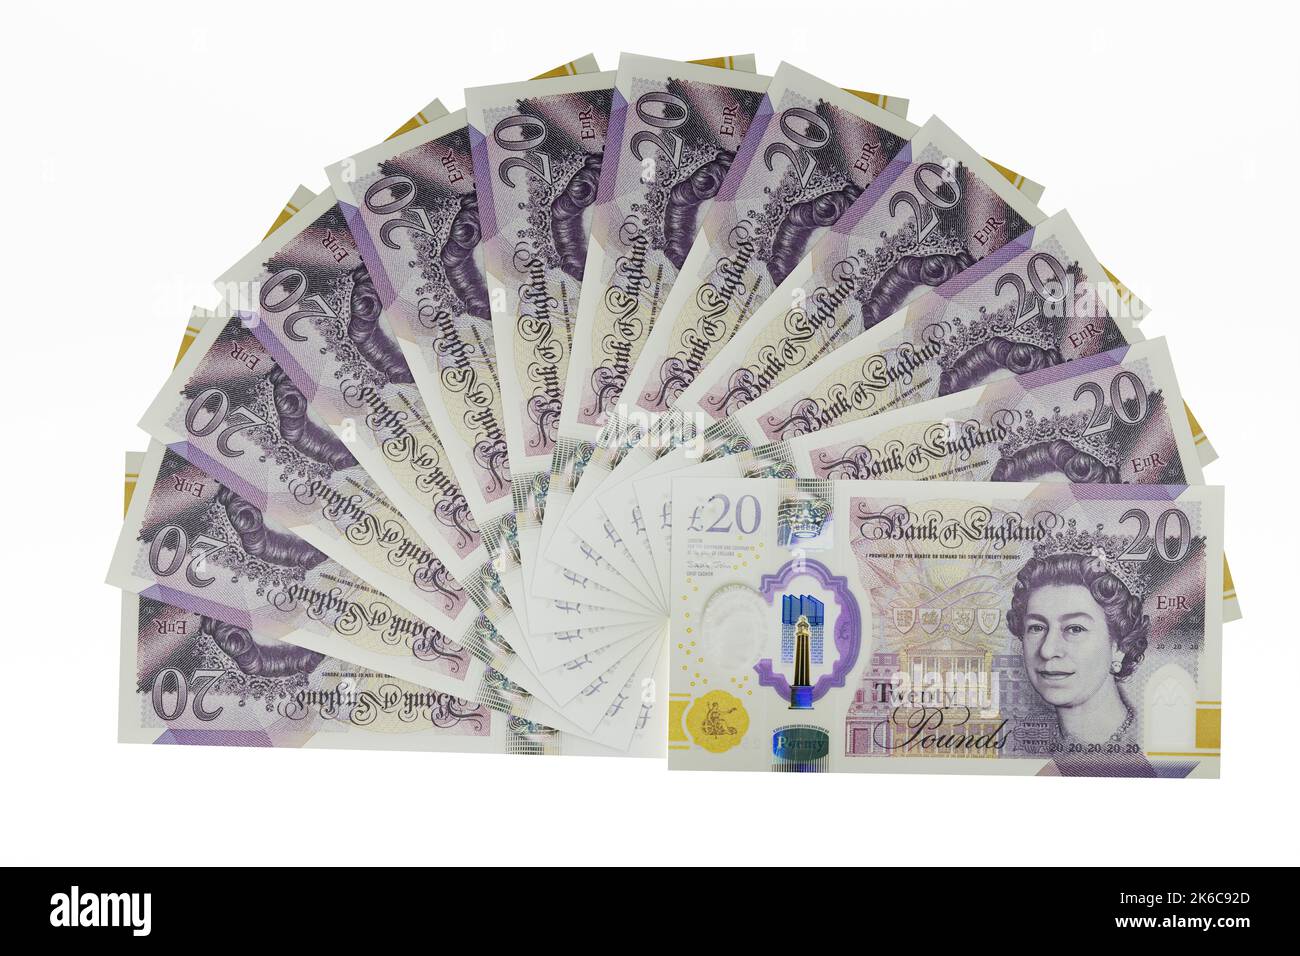 UK Money Billets fan de UK Polymer £20 billets vingt livres billets monnaie britannique Banque D'Images